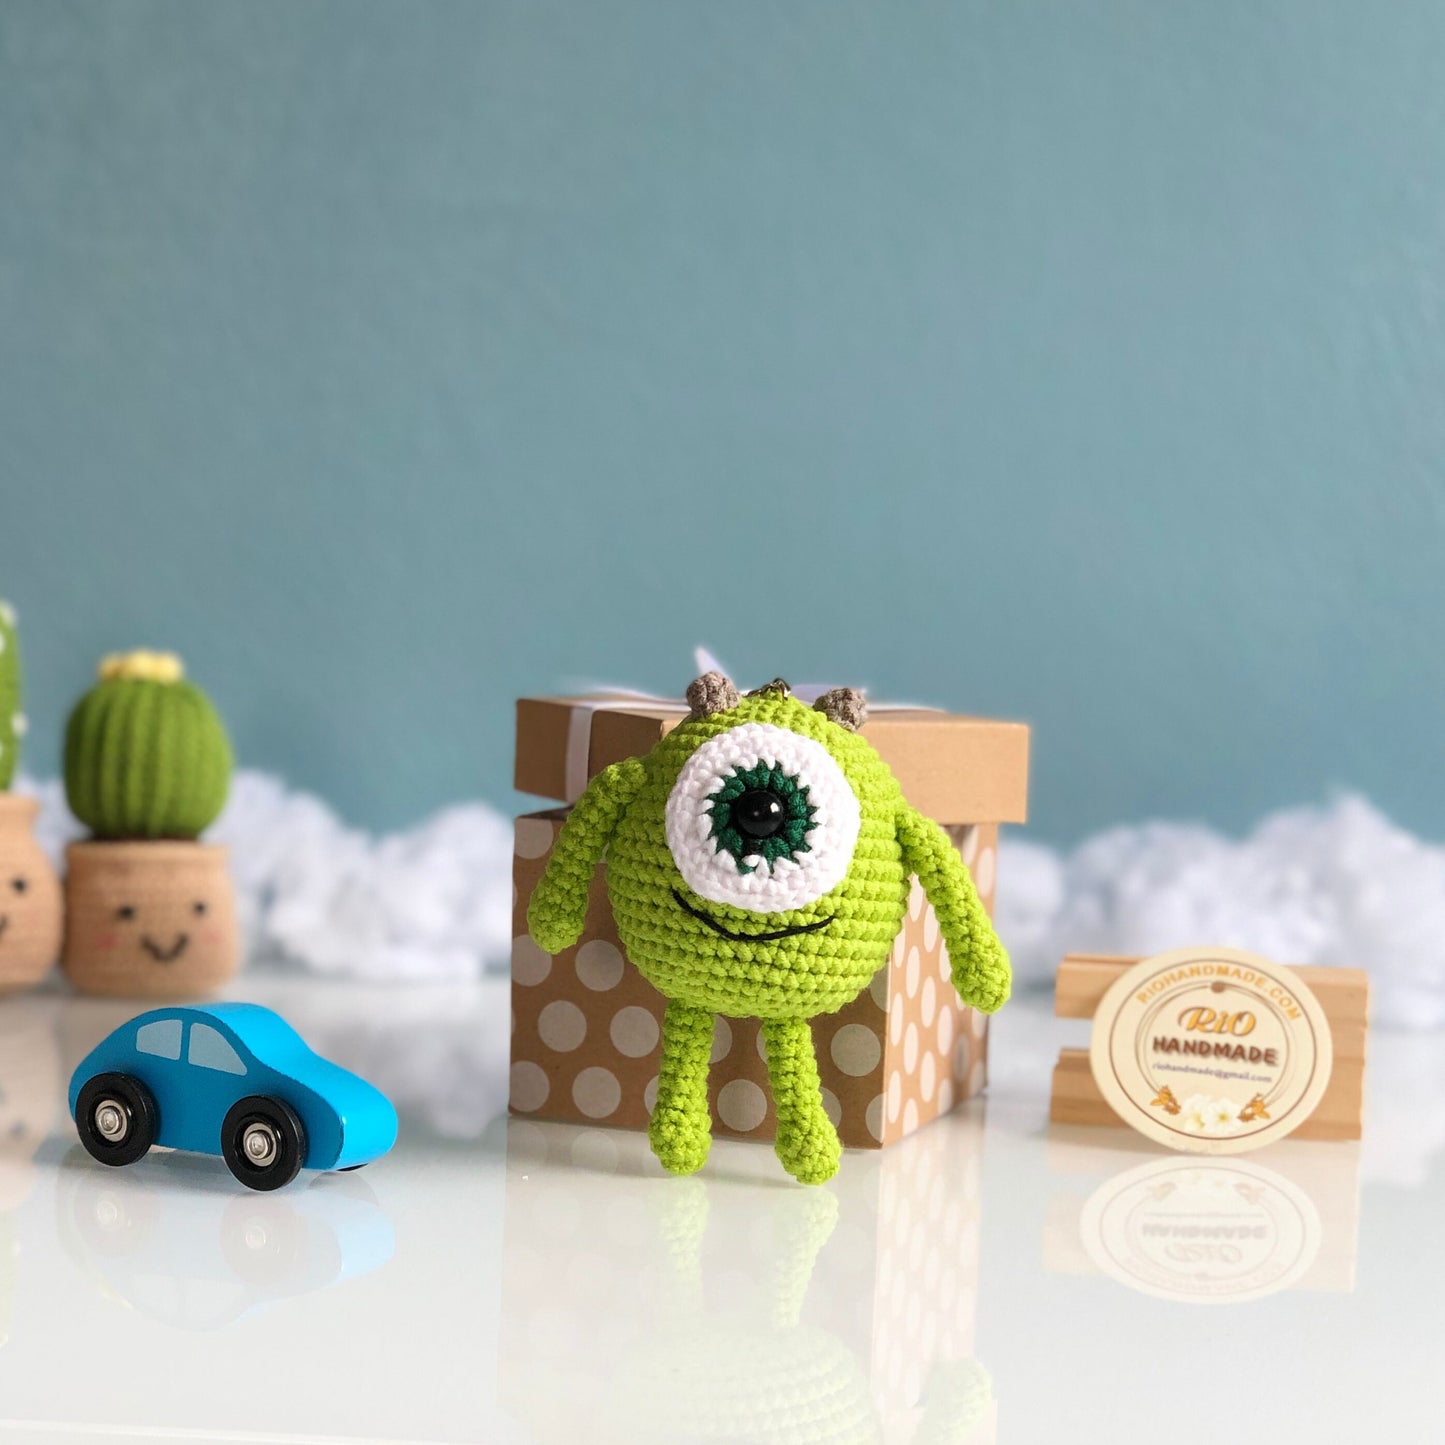 Handmade monster crochet keychain, amigurumi Mike Wazowski, inspired monster plushie toy, cute gift